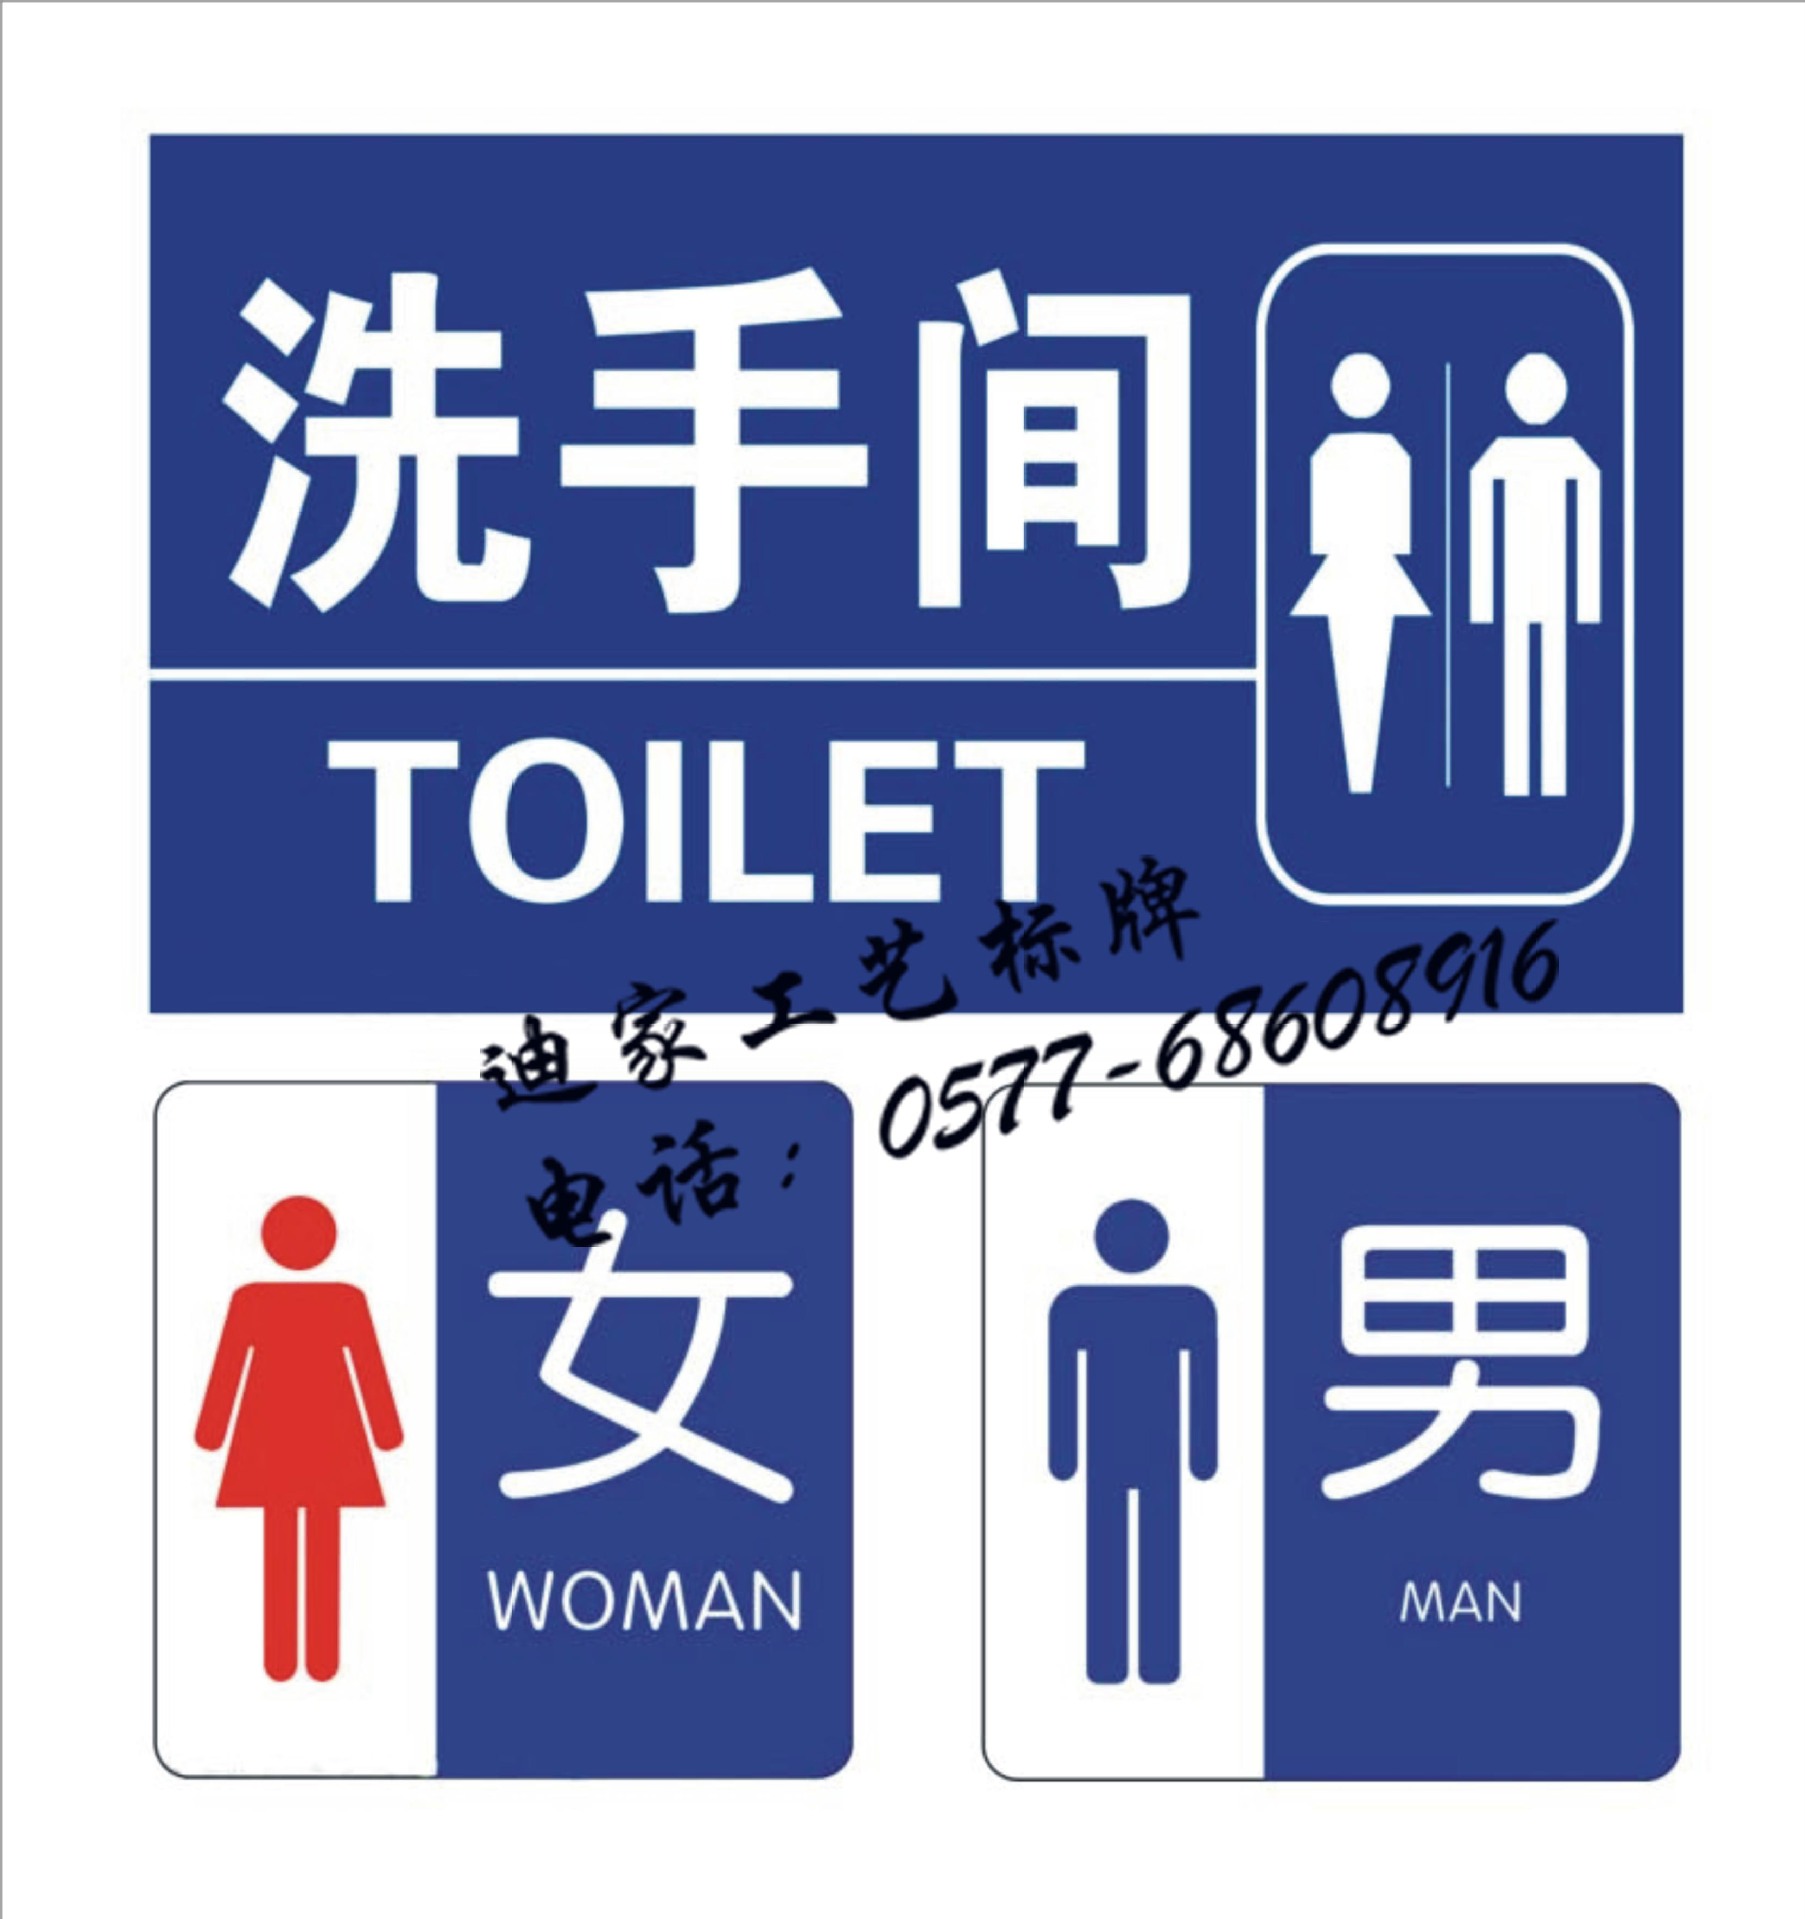 厂家直销 洗手间提示牌 厕所牌门牌 节约用水 当心地滑标牌